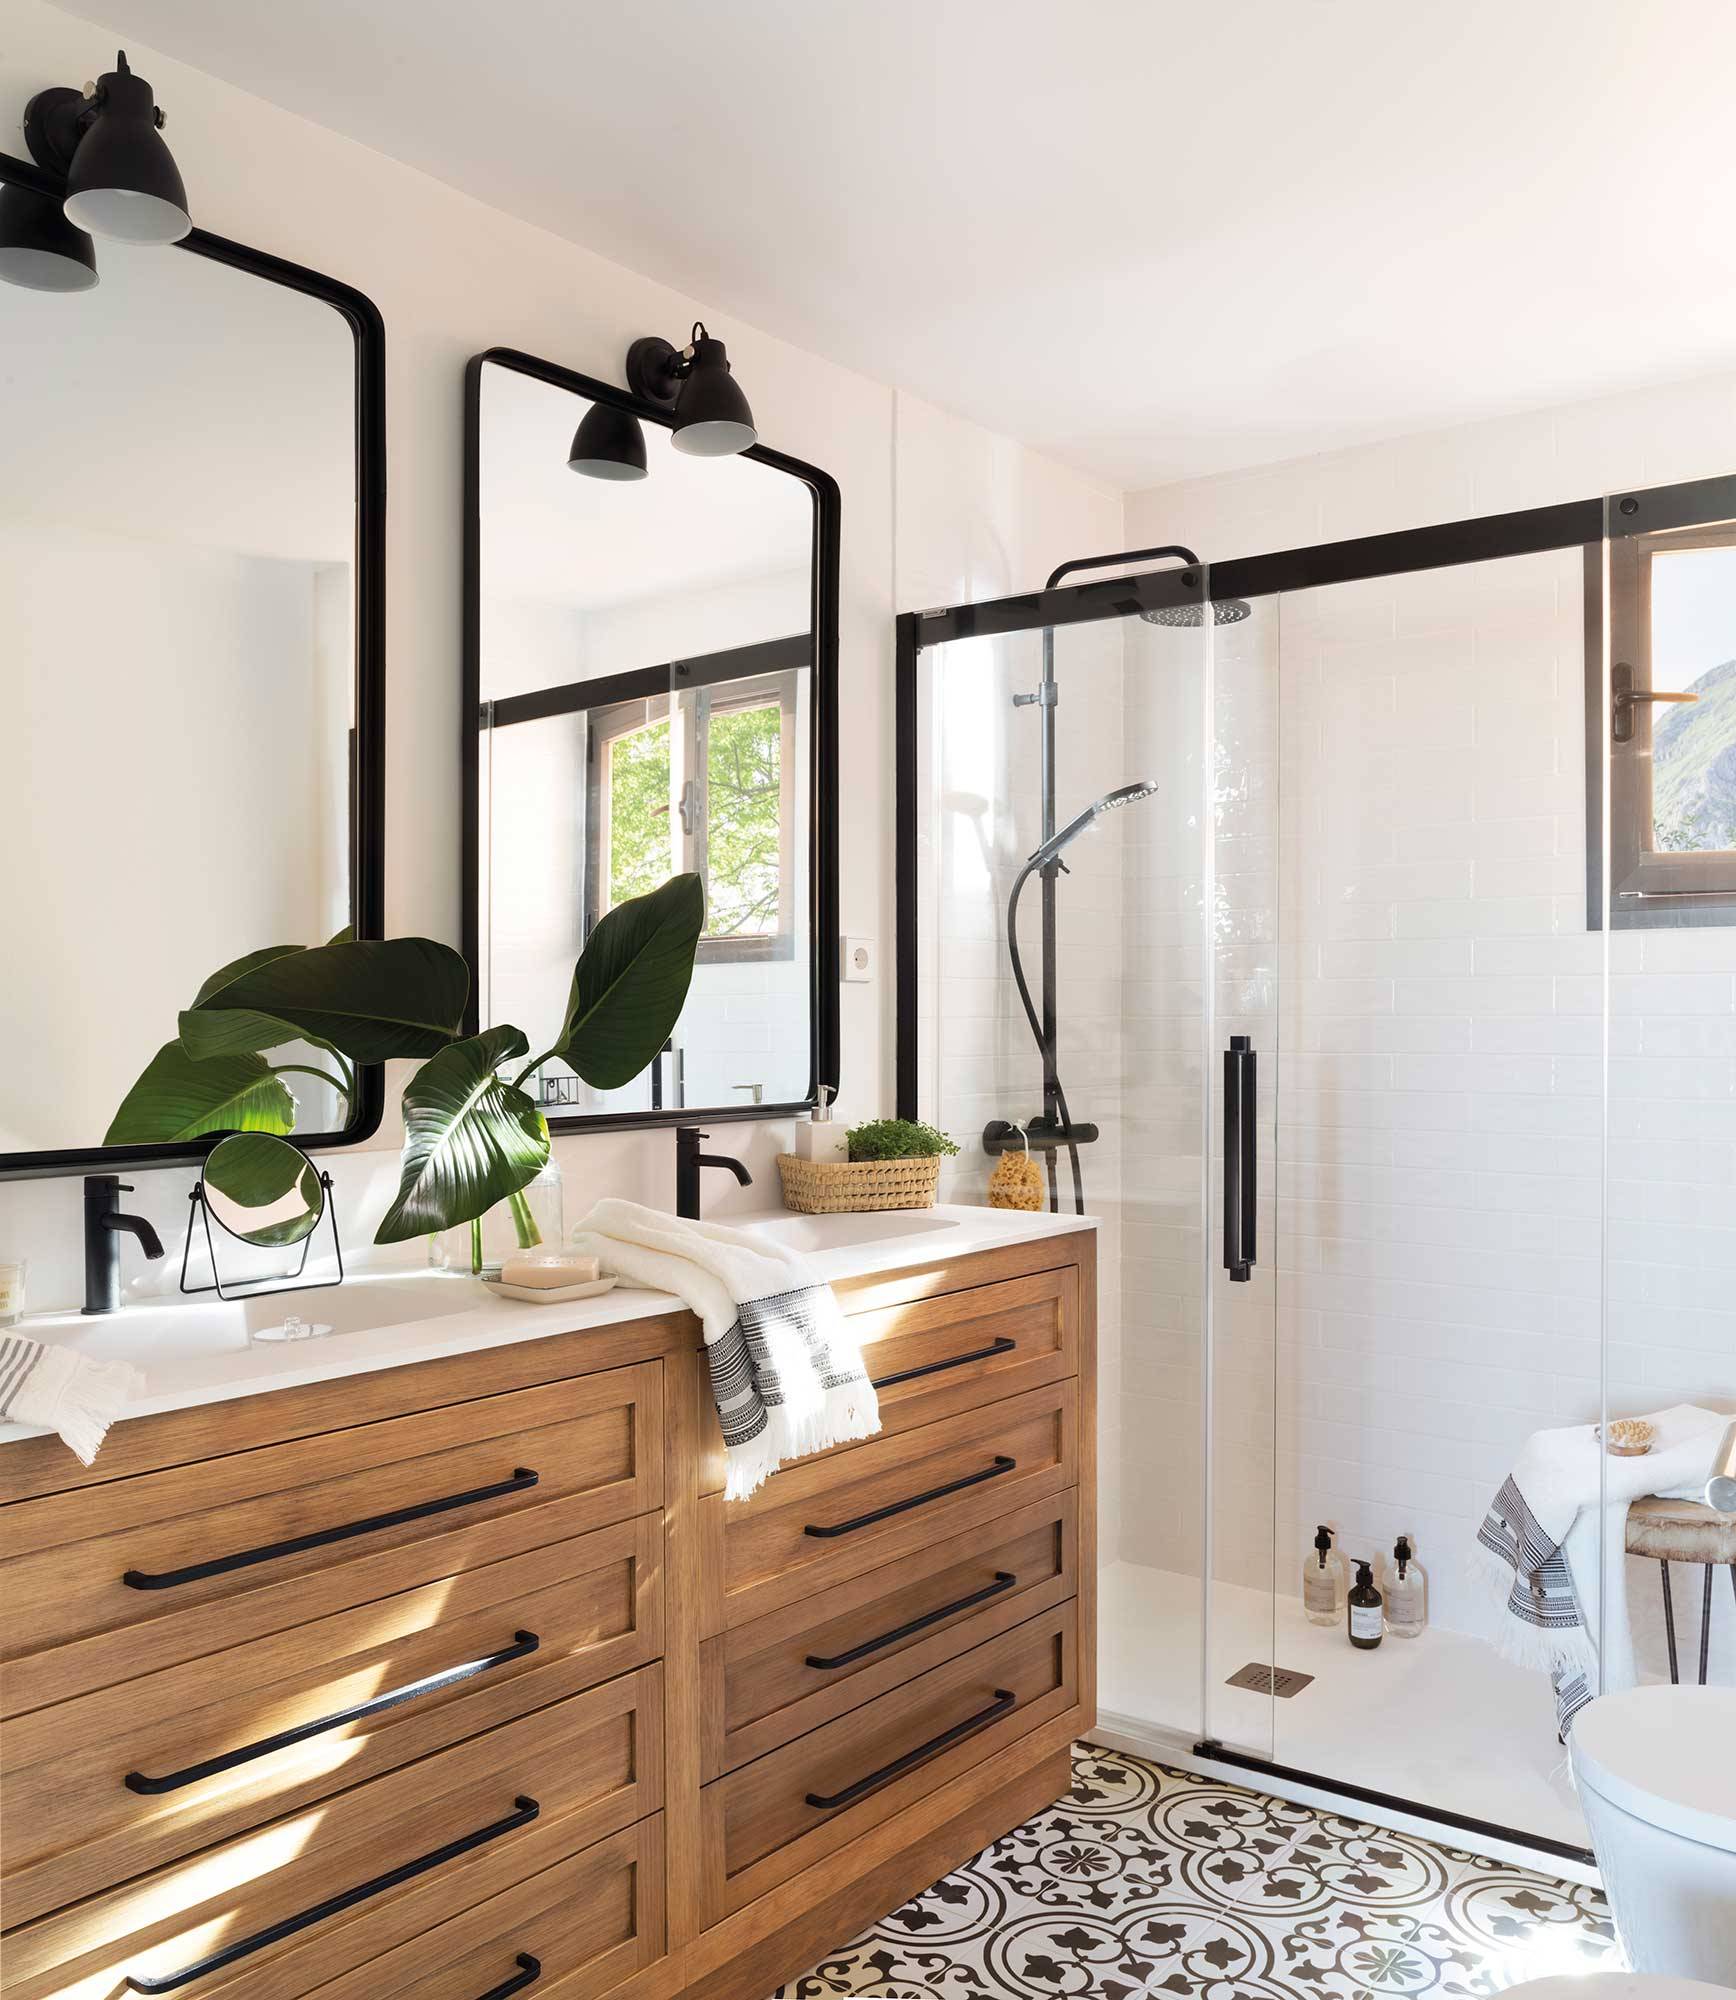 Baño con ducha, suelo porcelánico con mosaico y mueble bajolavabo de madera con dos lavamanos y dos espejos 00510667